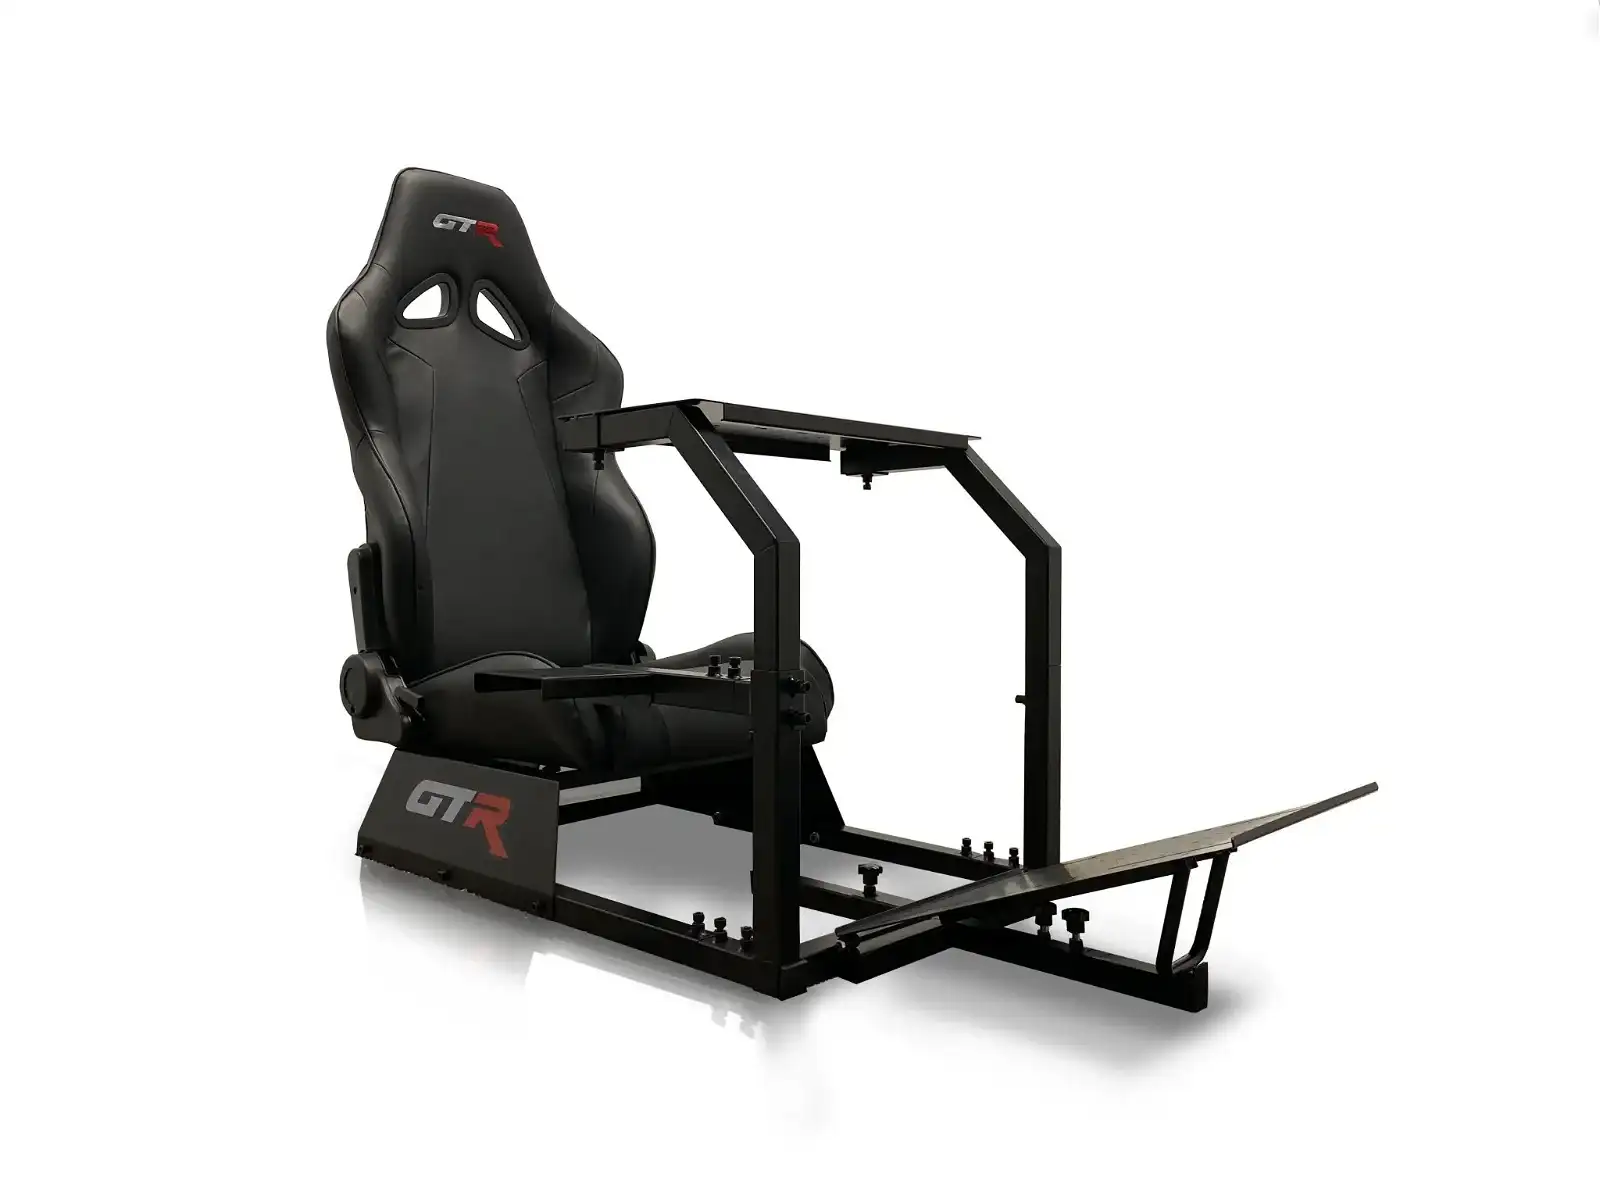 Image of GTA Racing Seat Simulator